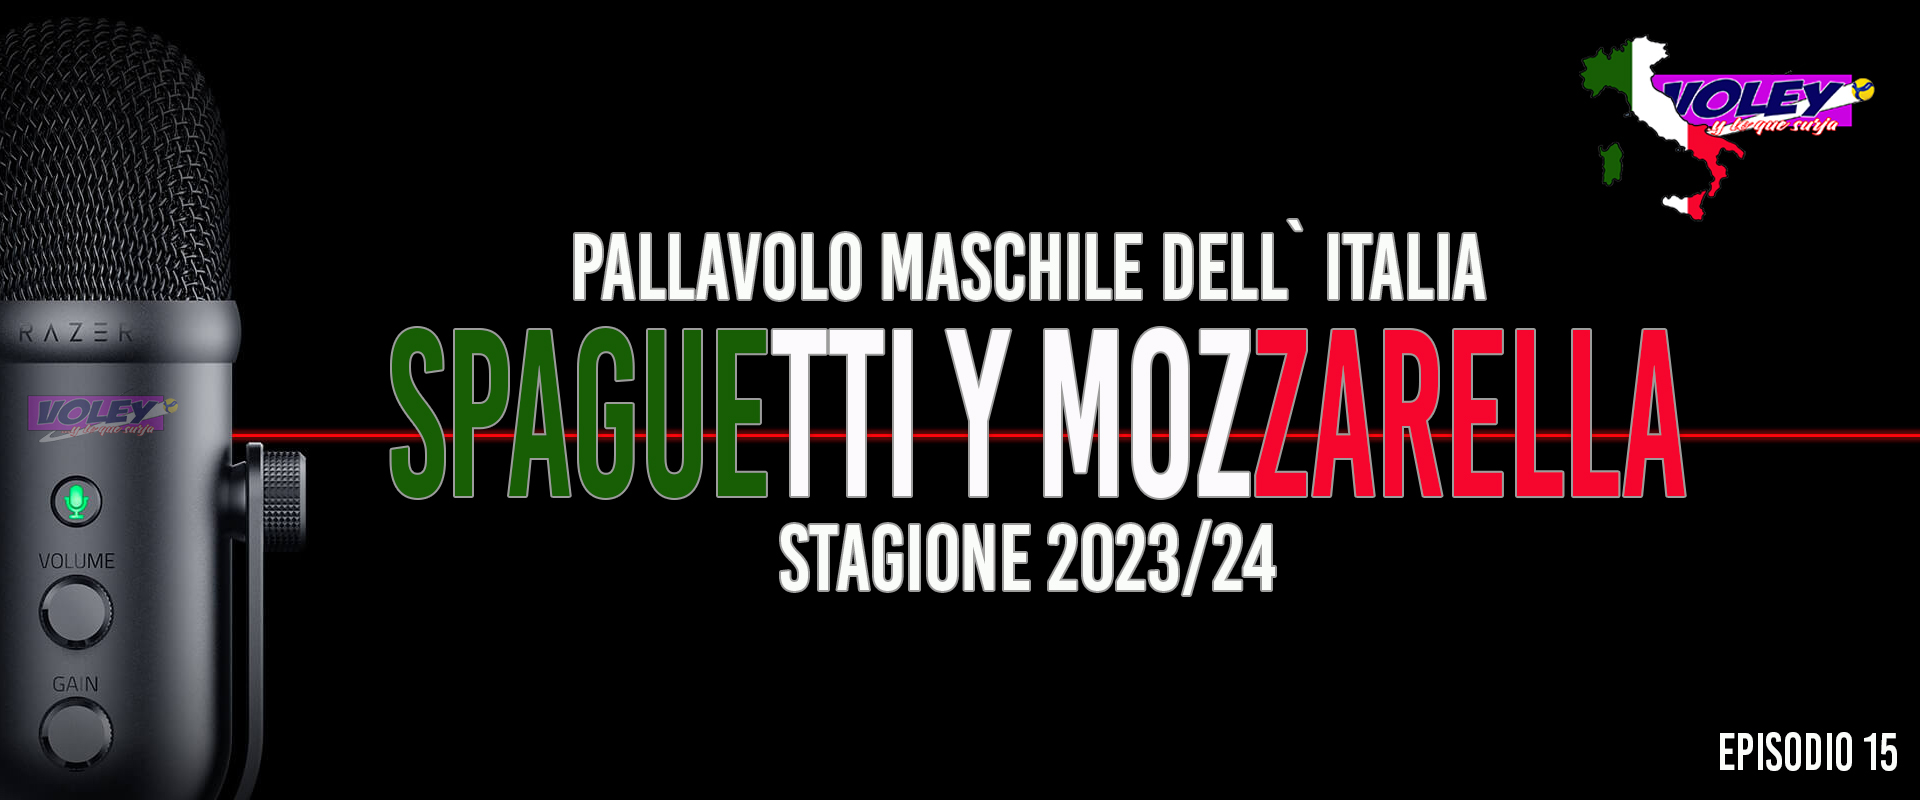 Quiero Spaguetti y Mozzarella. Episodio 15. Ciao Petrella, Cisterna lo borda y más.